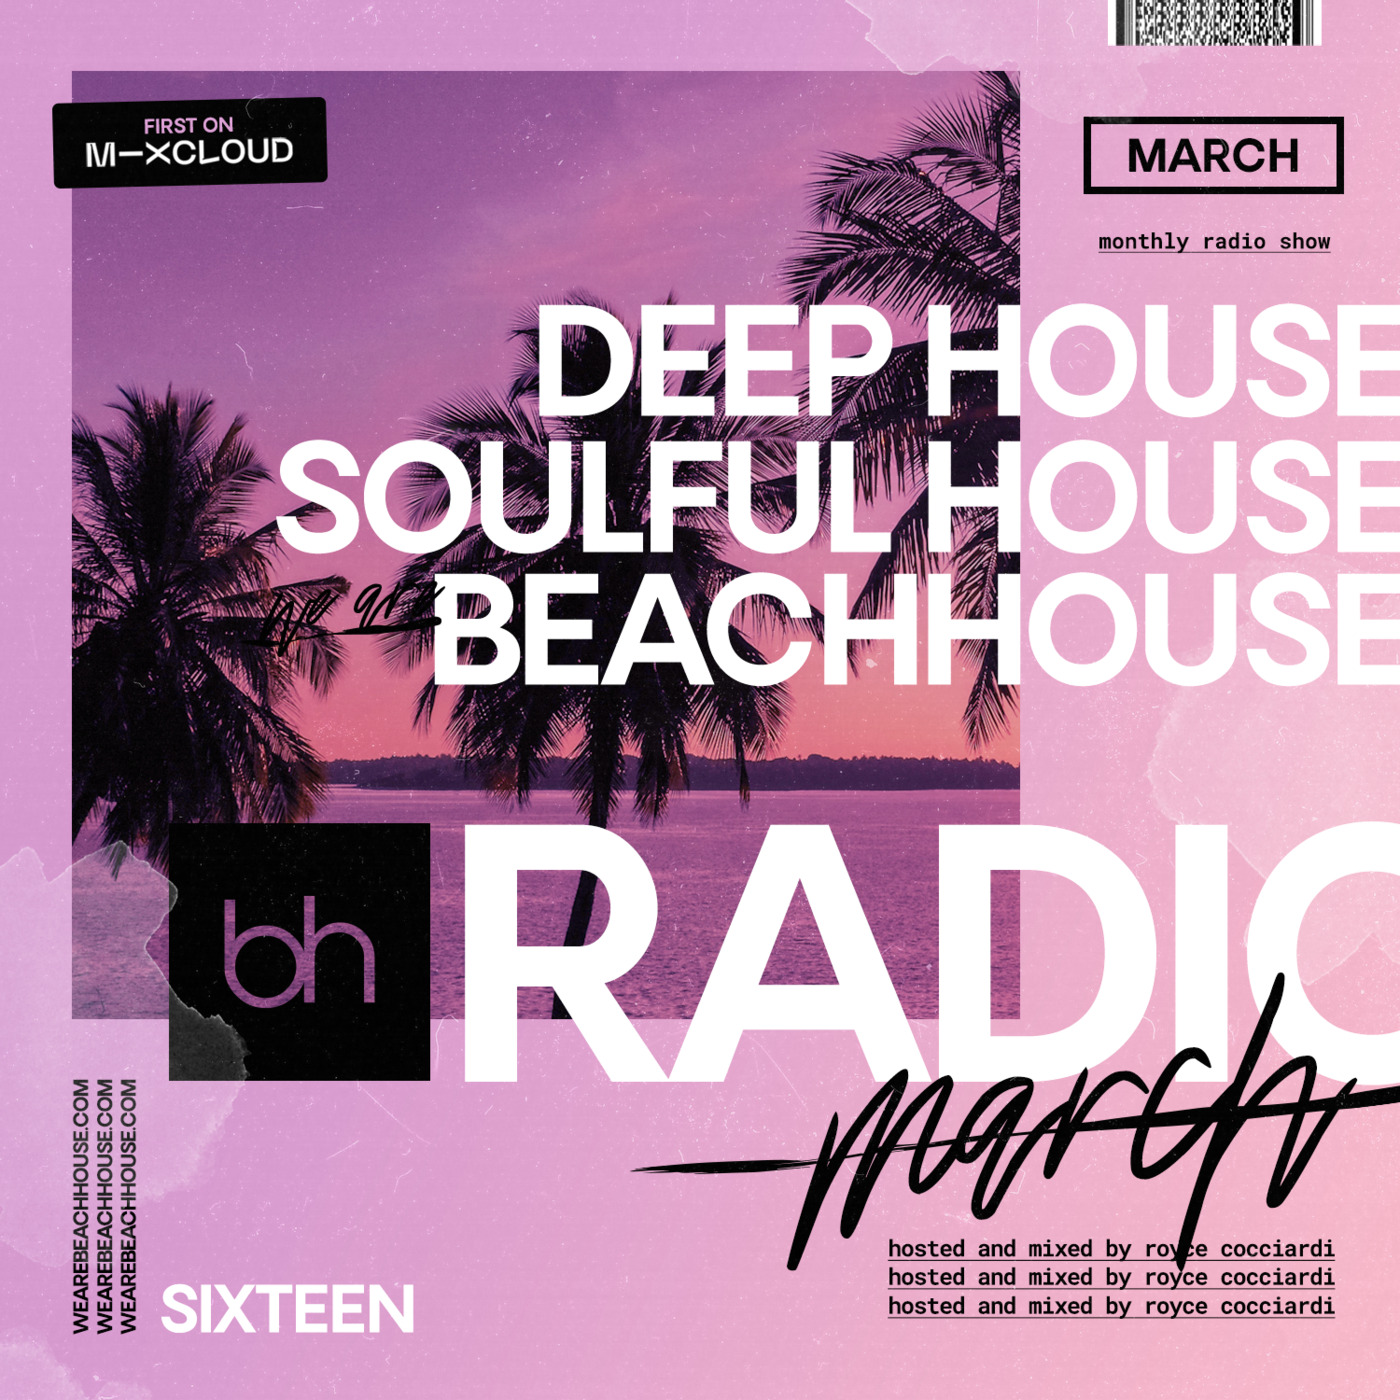 Beachhouse RADIO - March 2021 - Episode 16